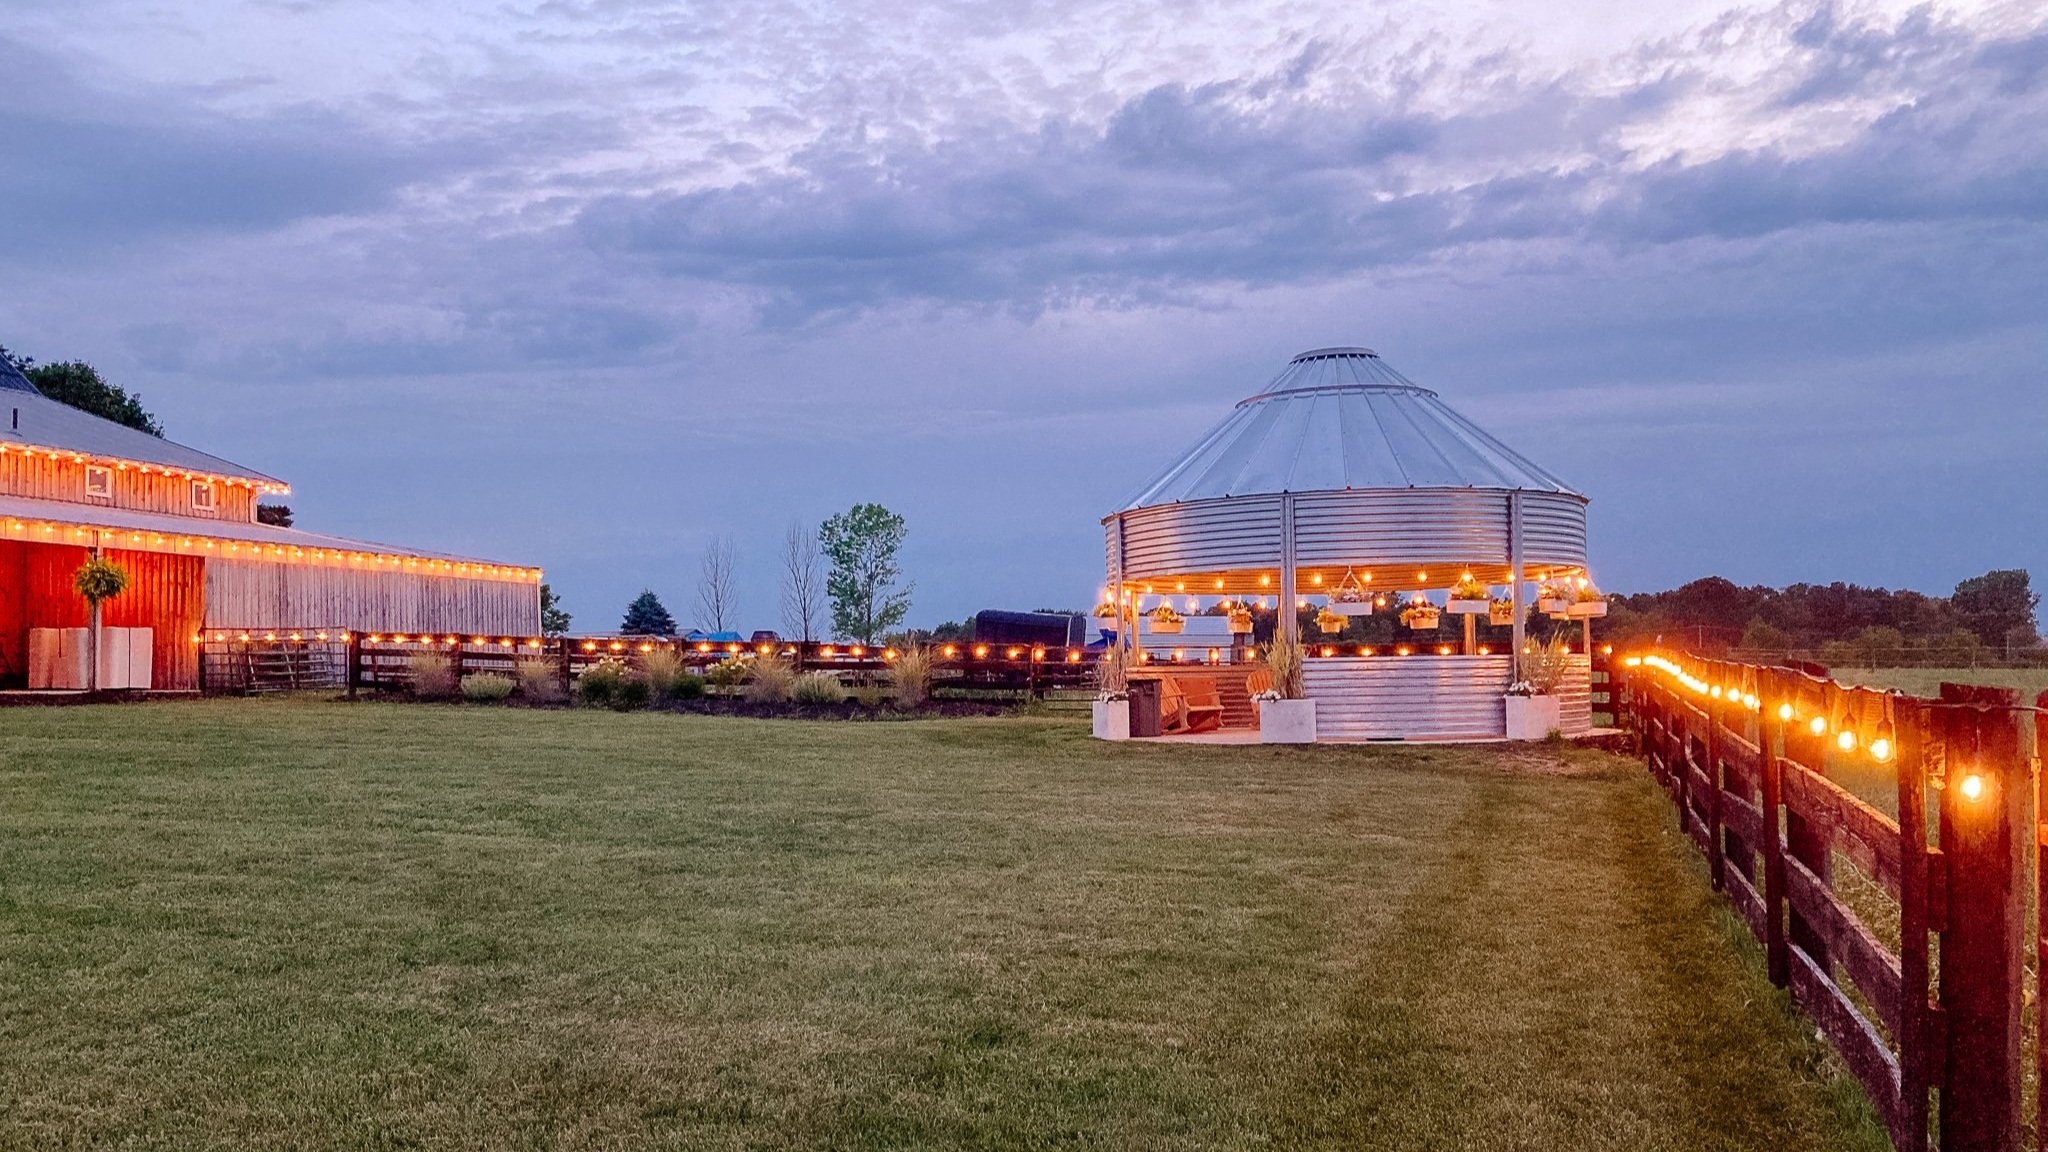 Barn and grain bin silo at Columbus Ohio wedding venue